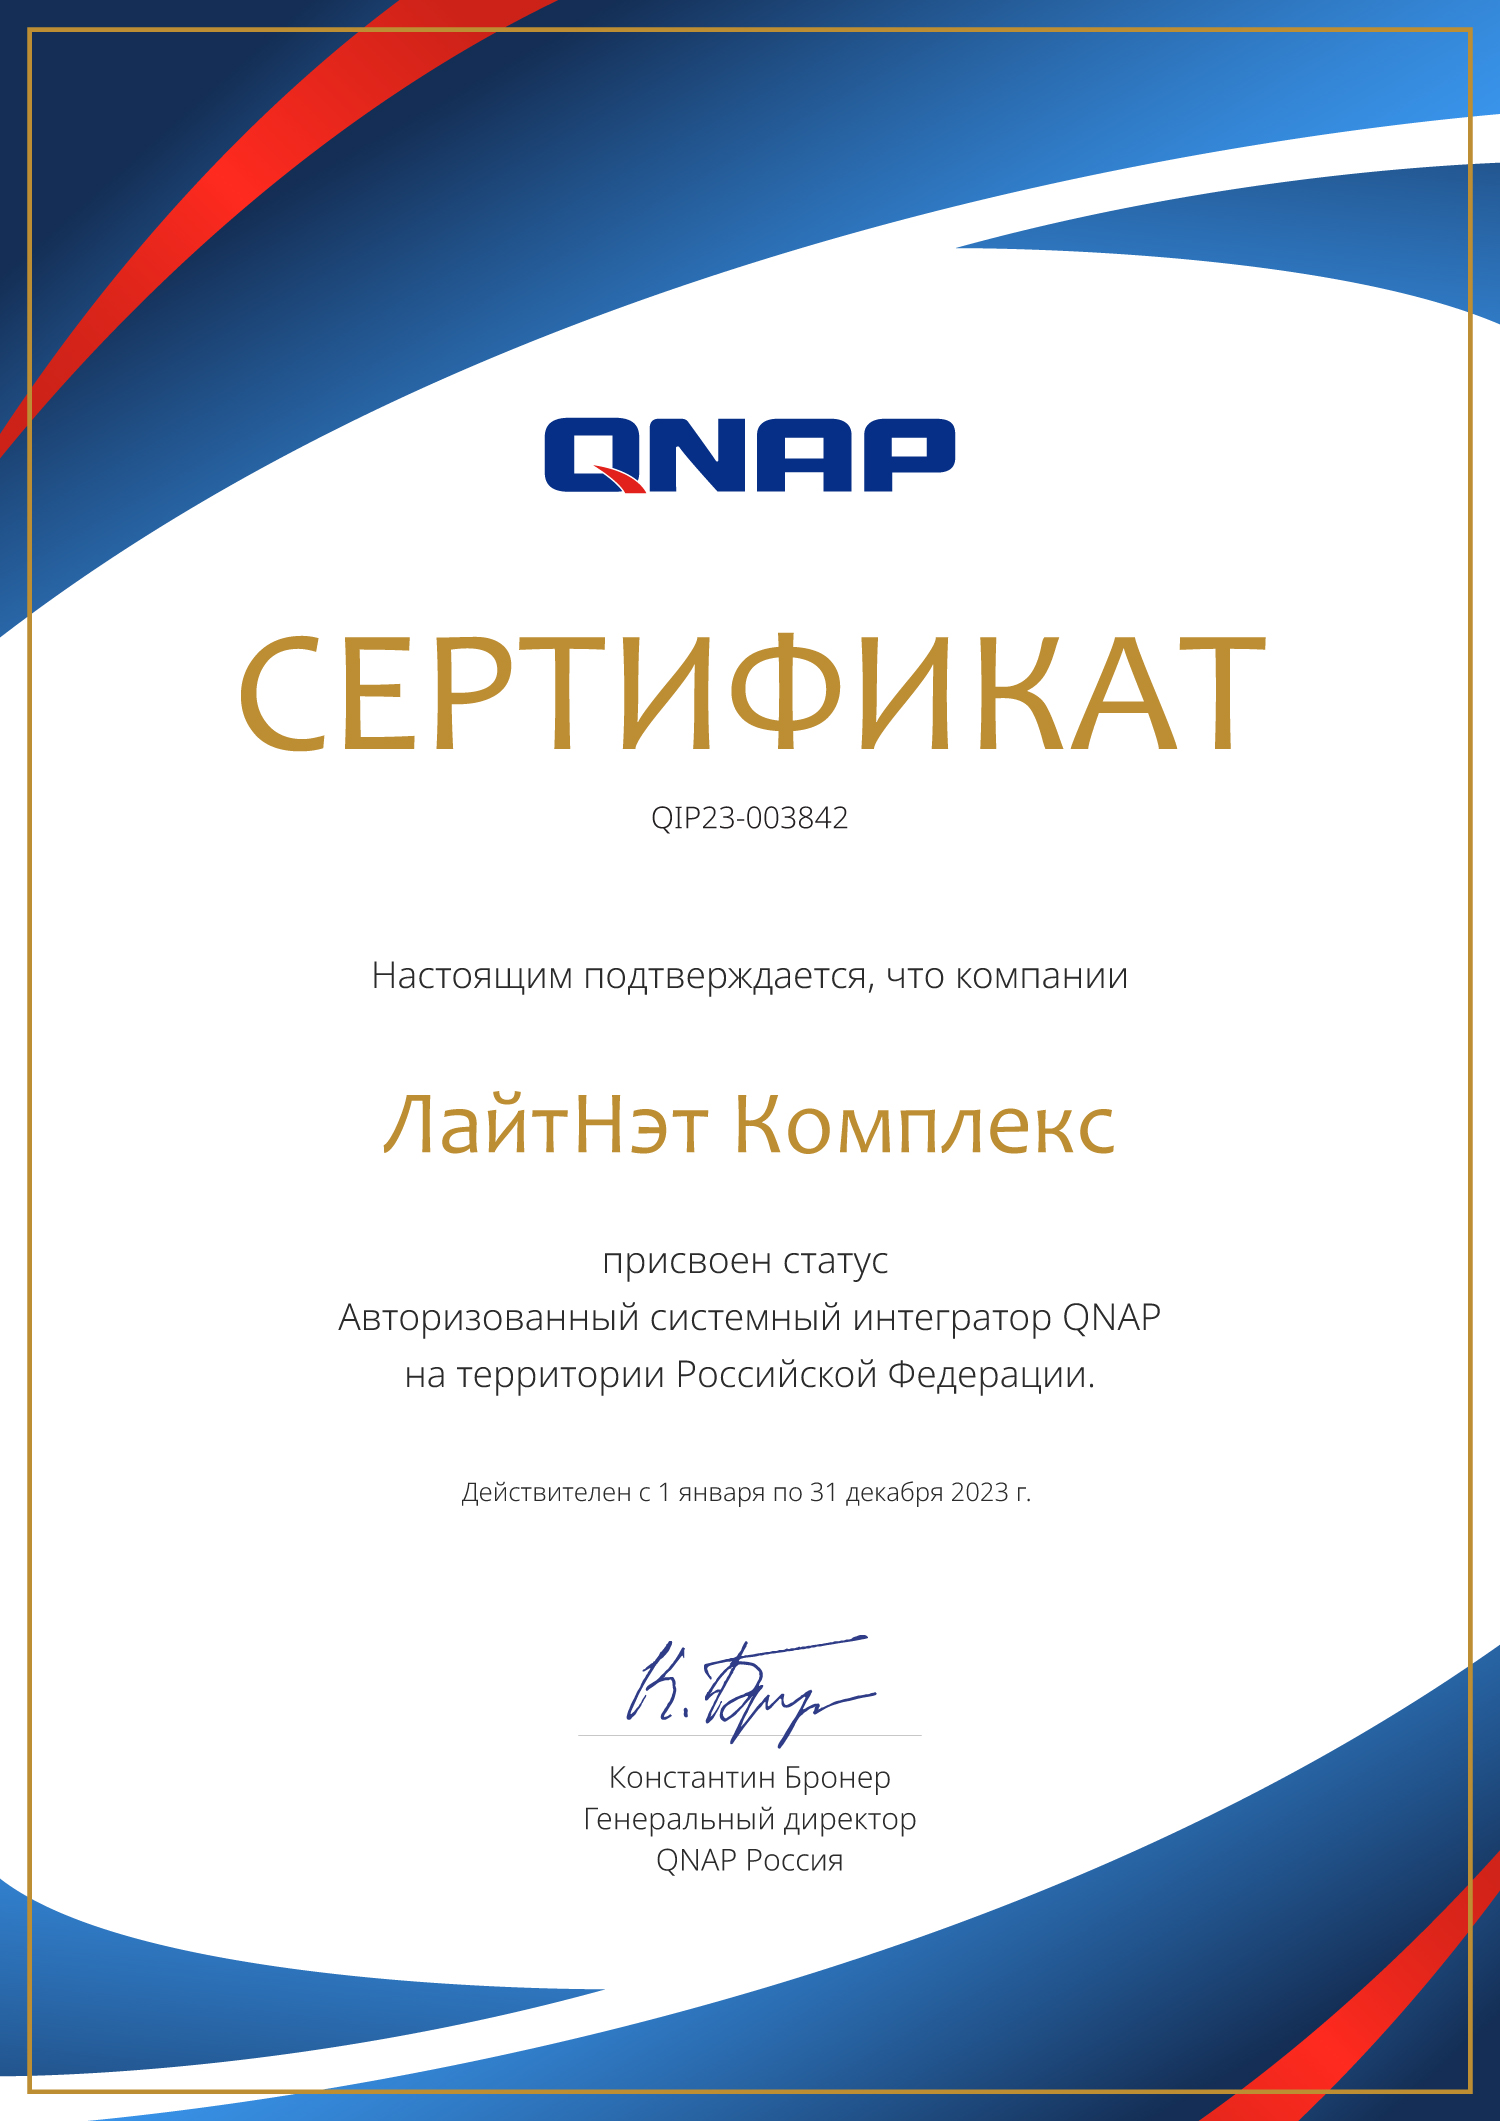 Qnap - Авторизованный системный интегратор